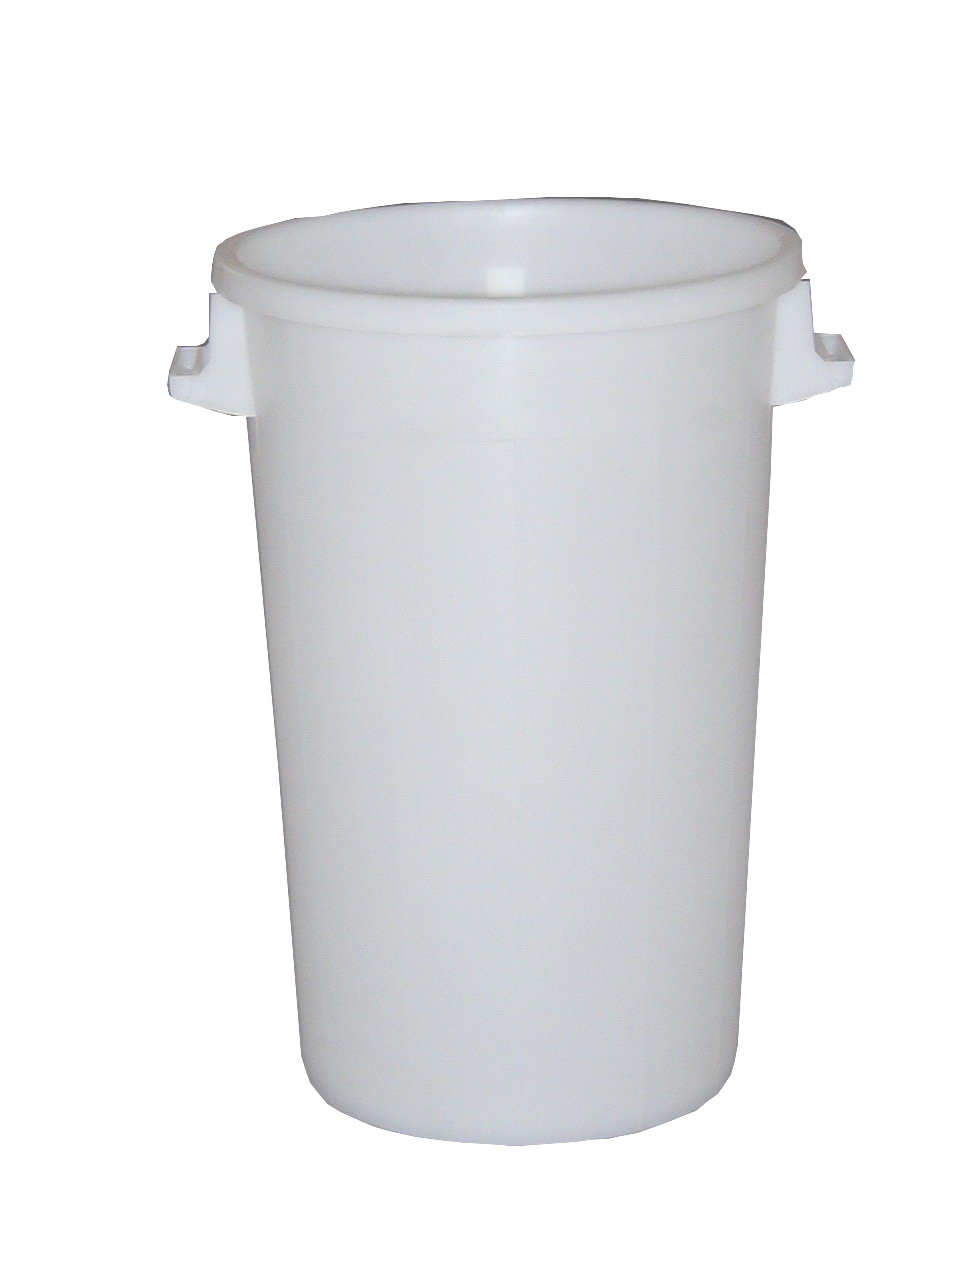 Abfallbehälter 150 Liter - Weiß